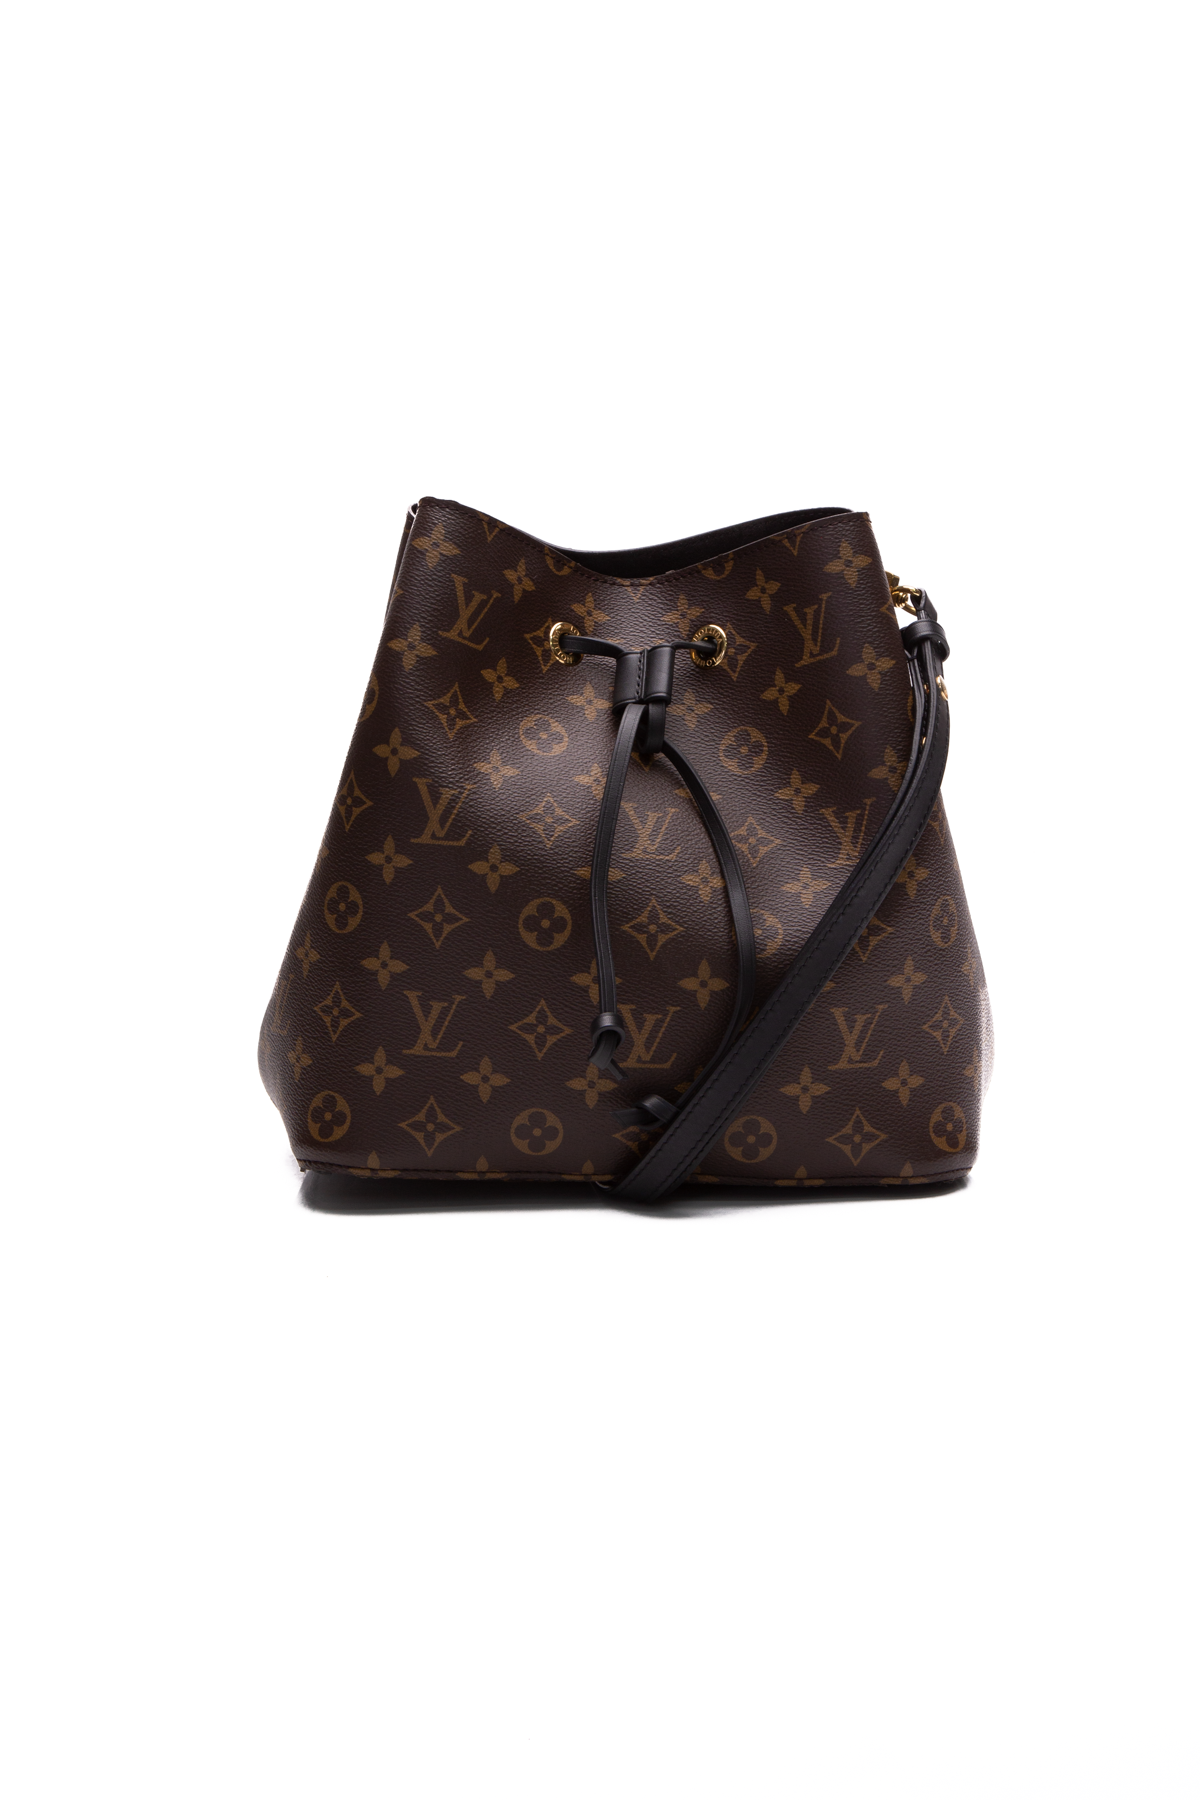 Louis Vuitton Metis Hobo Bag - Couture USA